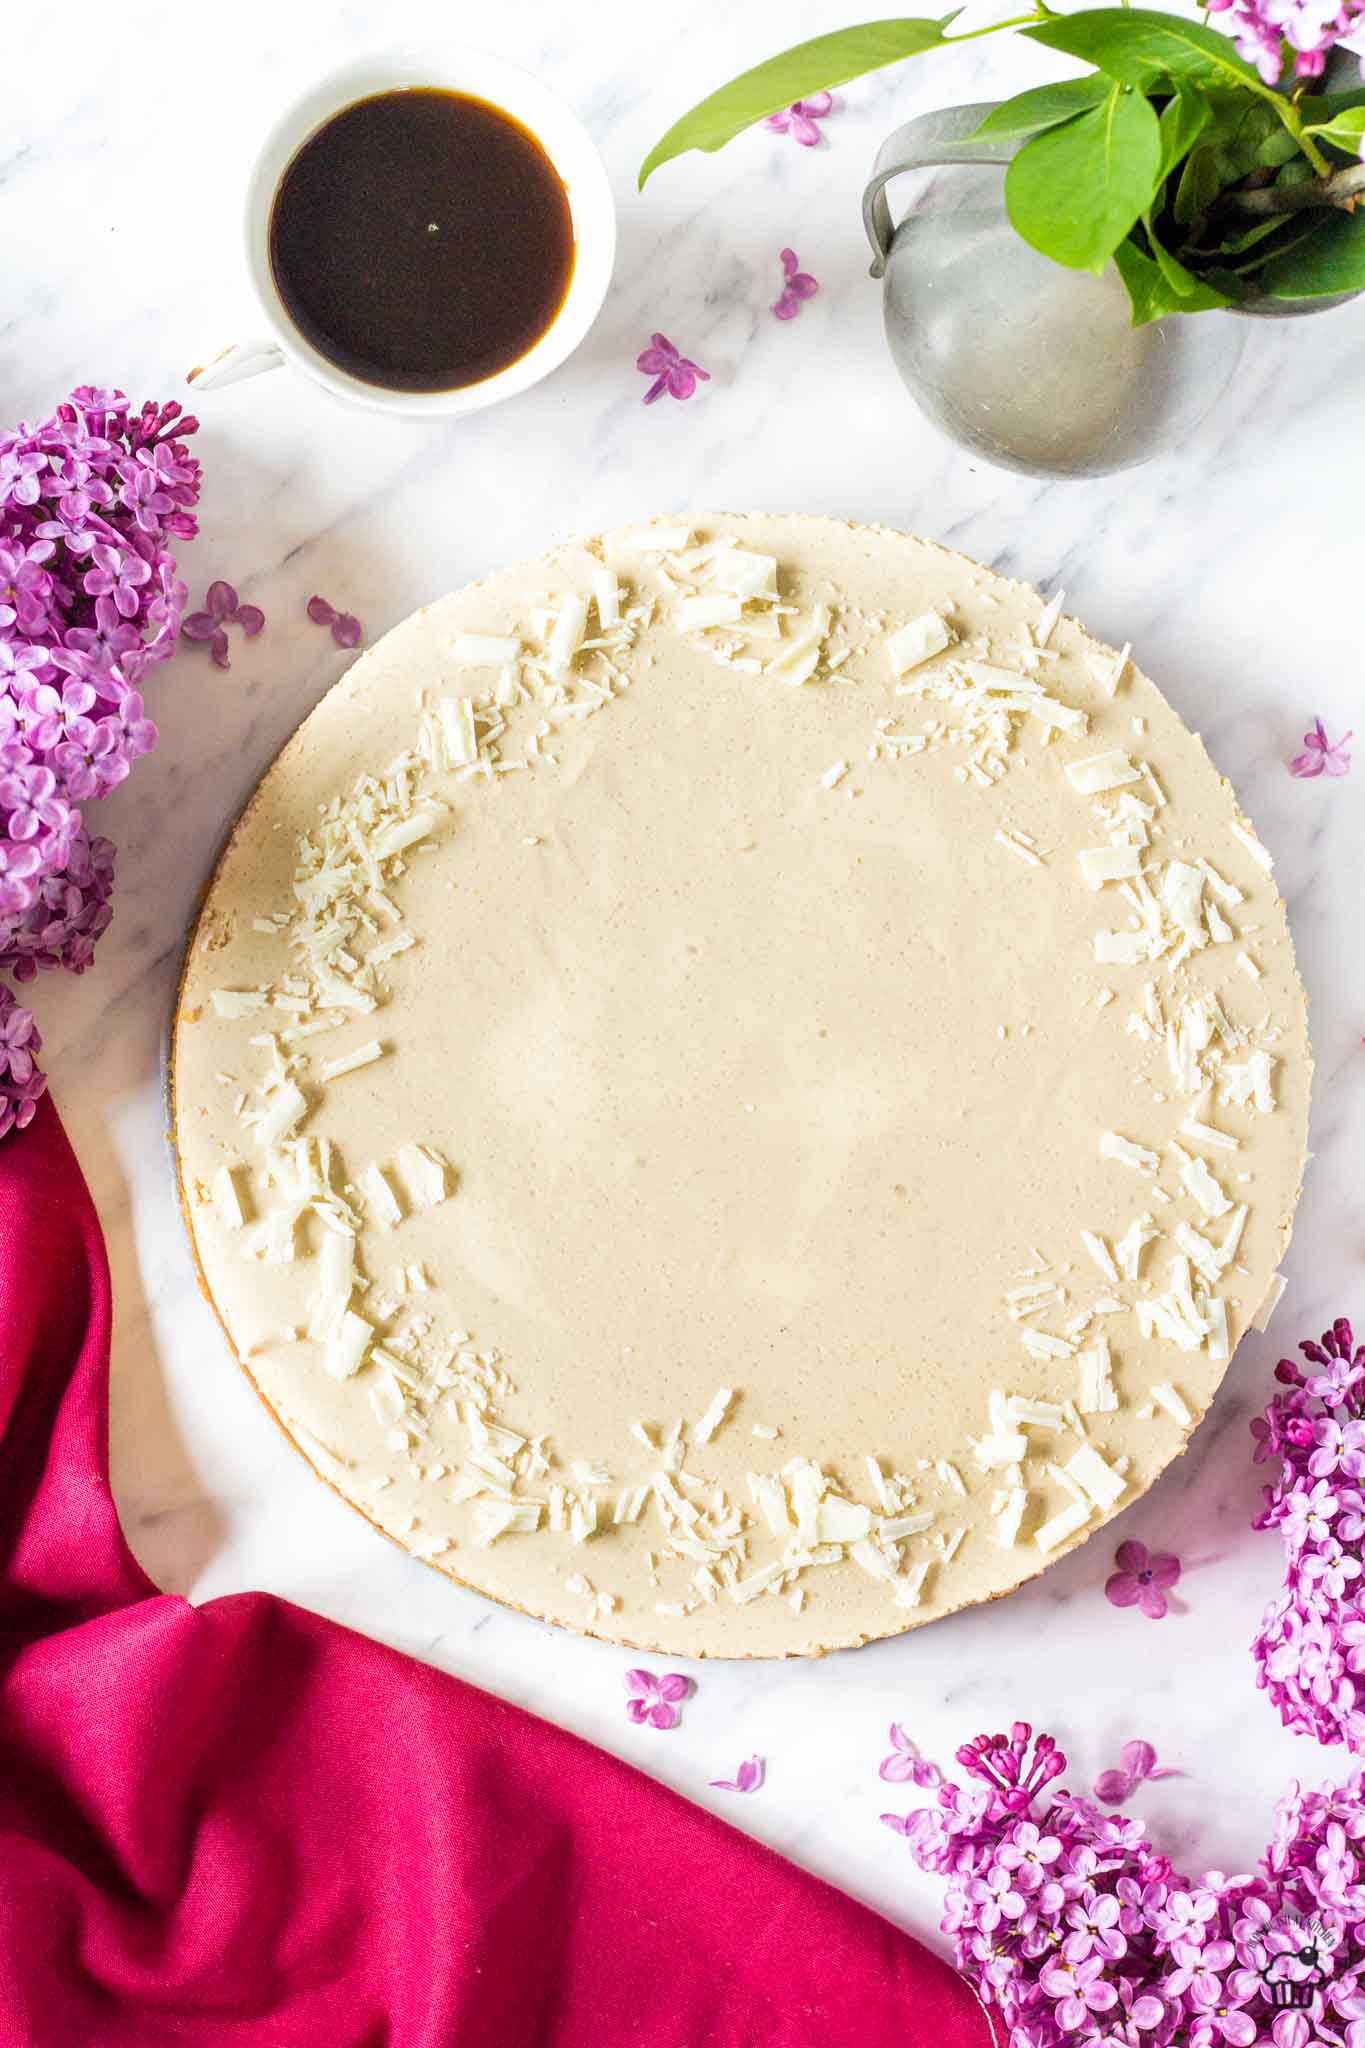 vanilkový cheesecake s kávovým mousse